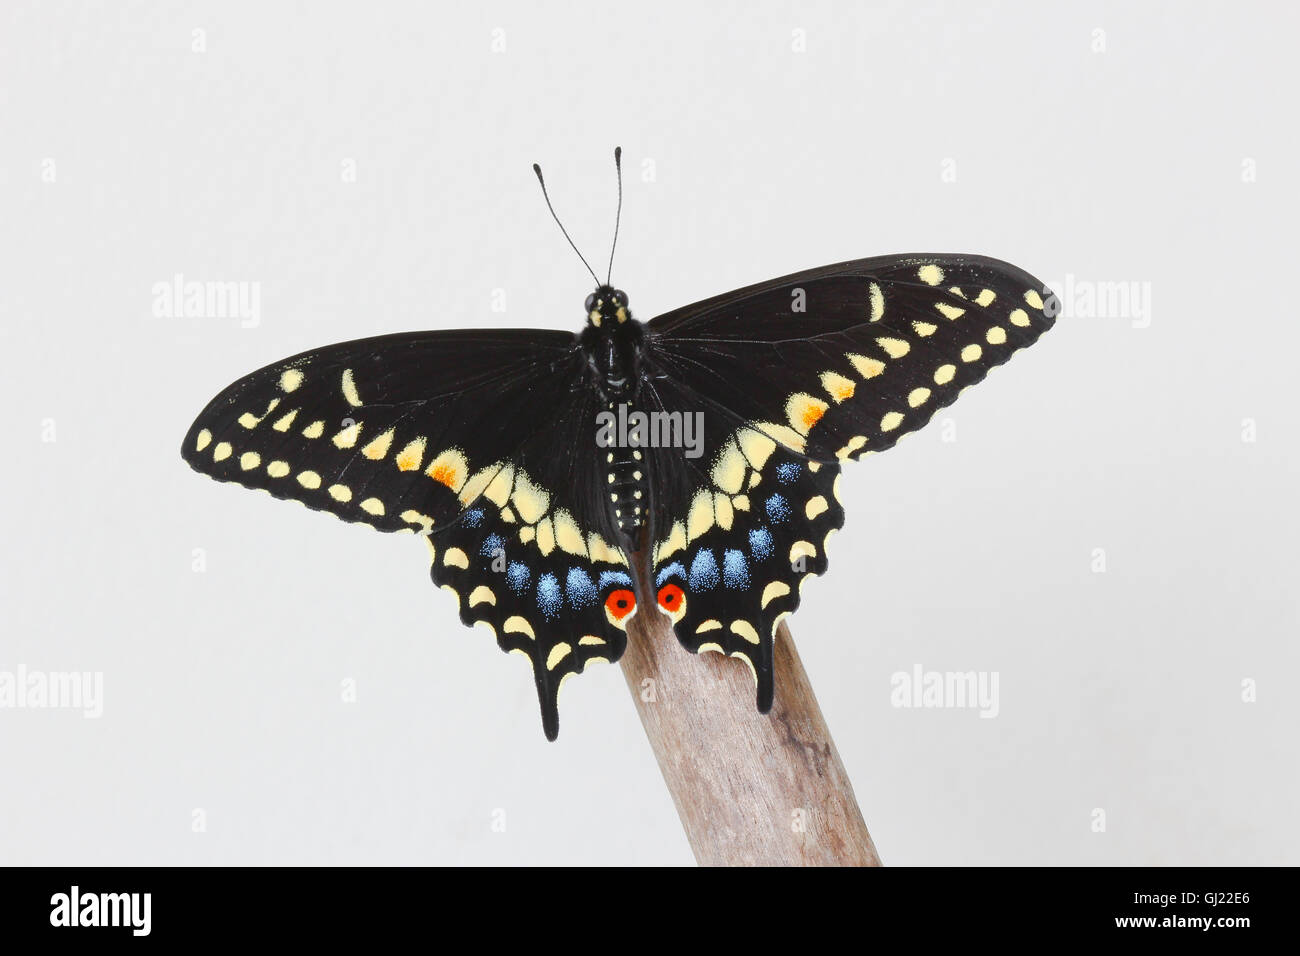 Un homme fraîchement émergées black swallowtail Butterfly (Papilio polyxenes) reposant sur un morceau de bois flotté, Indiana, United States Banque D'Images